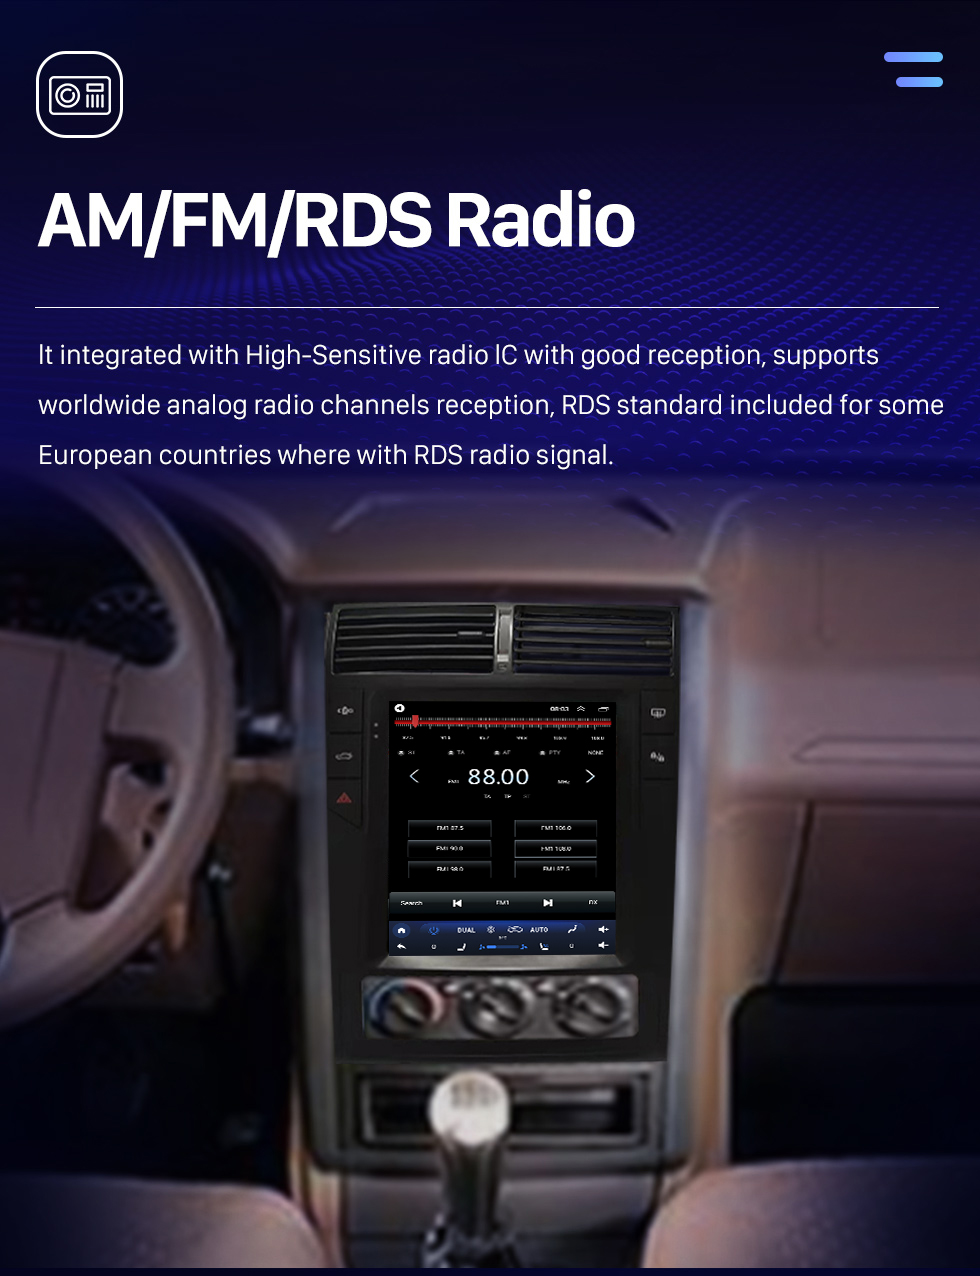 Seicane OEM 9,7-дюймовый Android 10.0 Радио для 2012-2022 Peugeot 405 Bluetooth WIFI HD Сенсорный экран Поддержка GPS-навигации Carplay Задняя камера DAB + OBD2